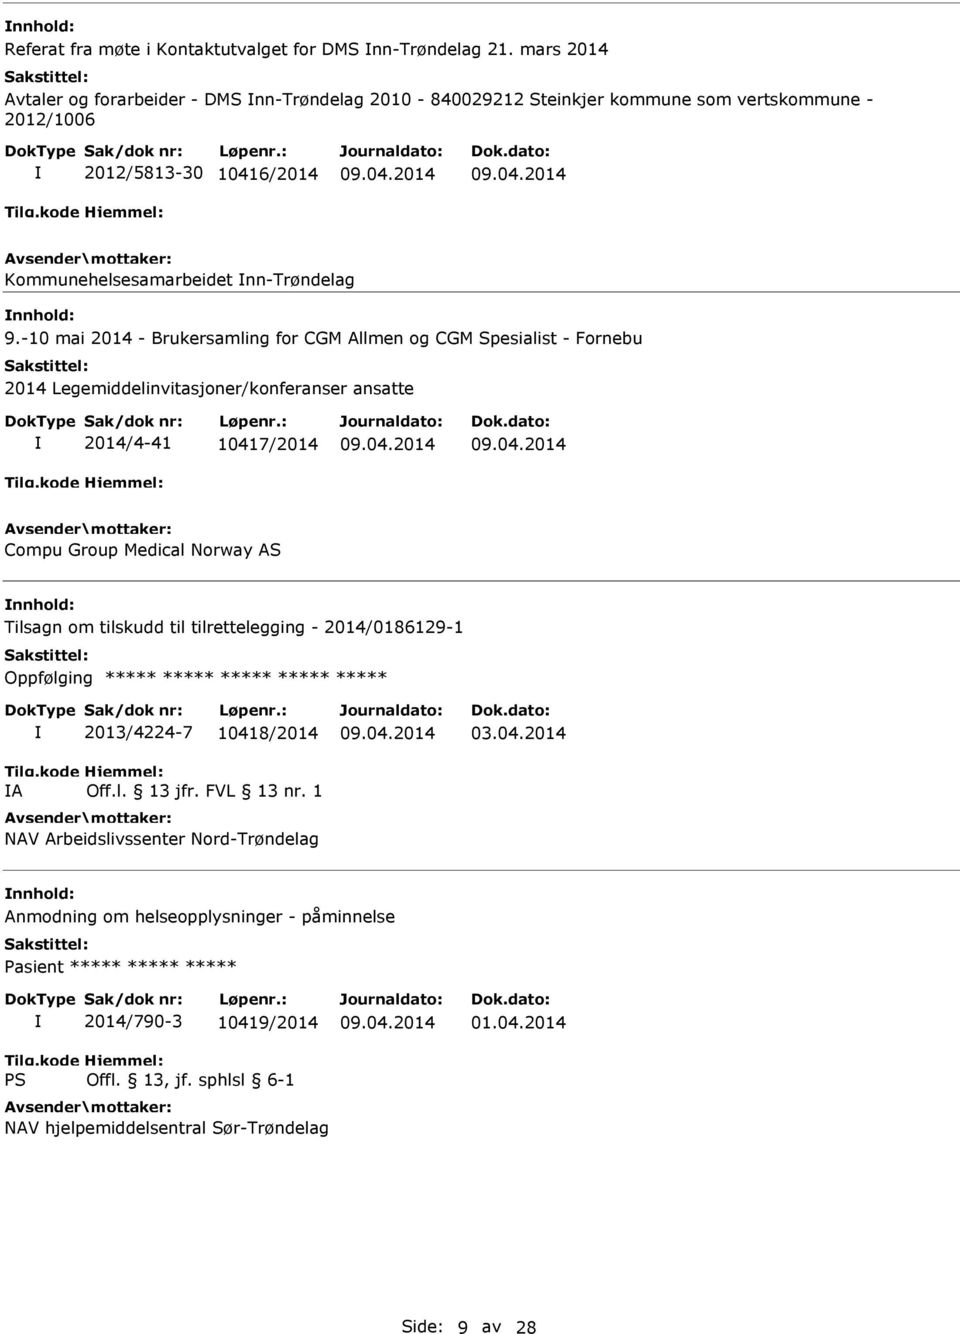 -10 mai 2014 - Brukersamling for CGM Allmen og CGM Spesialist - Fornebu 2014 Legemiddelinvitasjoner/konferanser ansatte 2014/4-41 10417/2014 Compu Group Medical Norway AS Tilsagn om